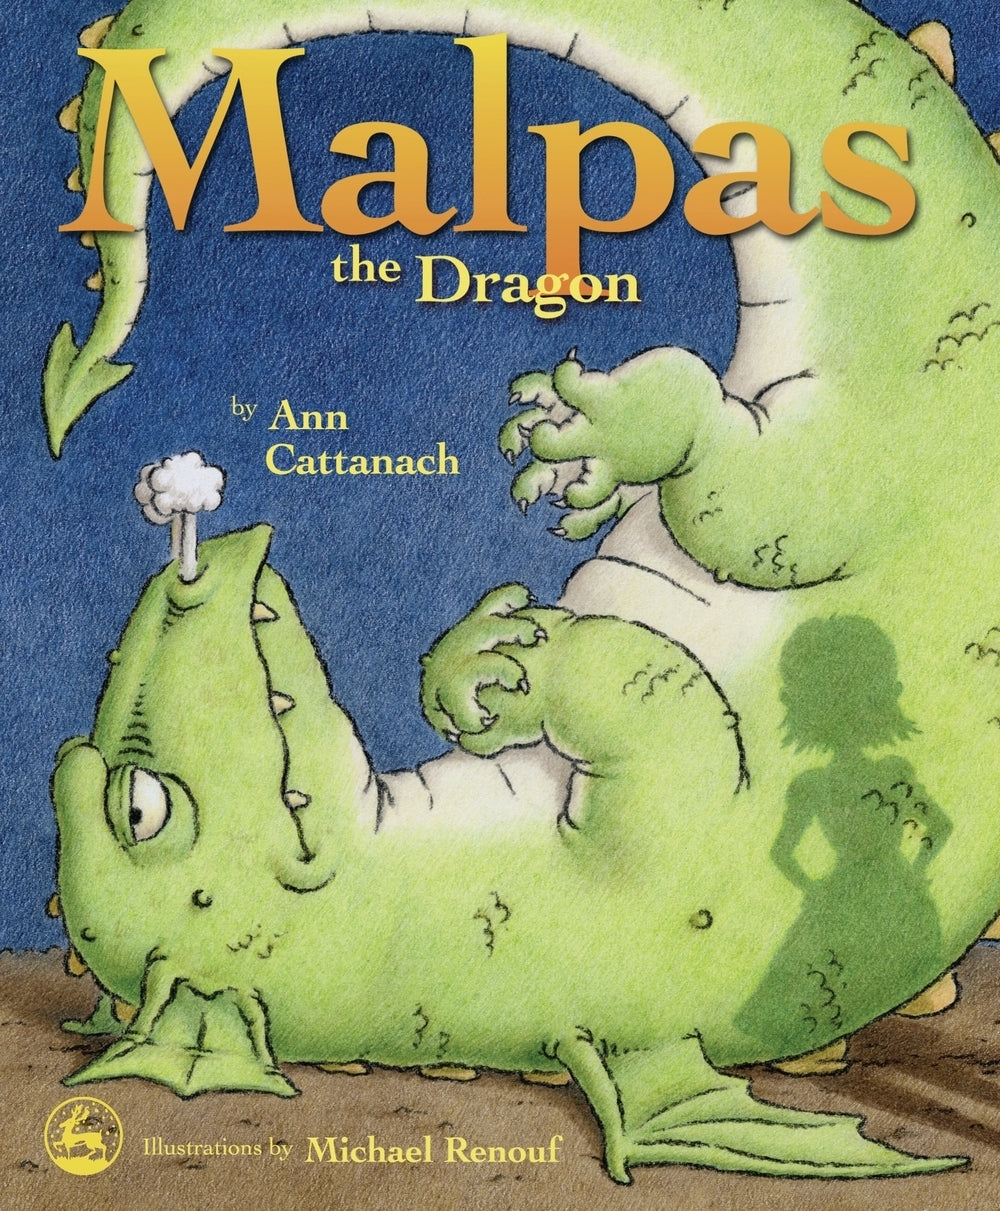 Malpas the Dragon by Michael Renouf, Ann Cattanach